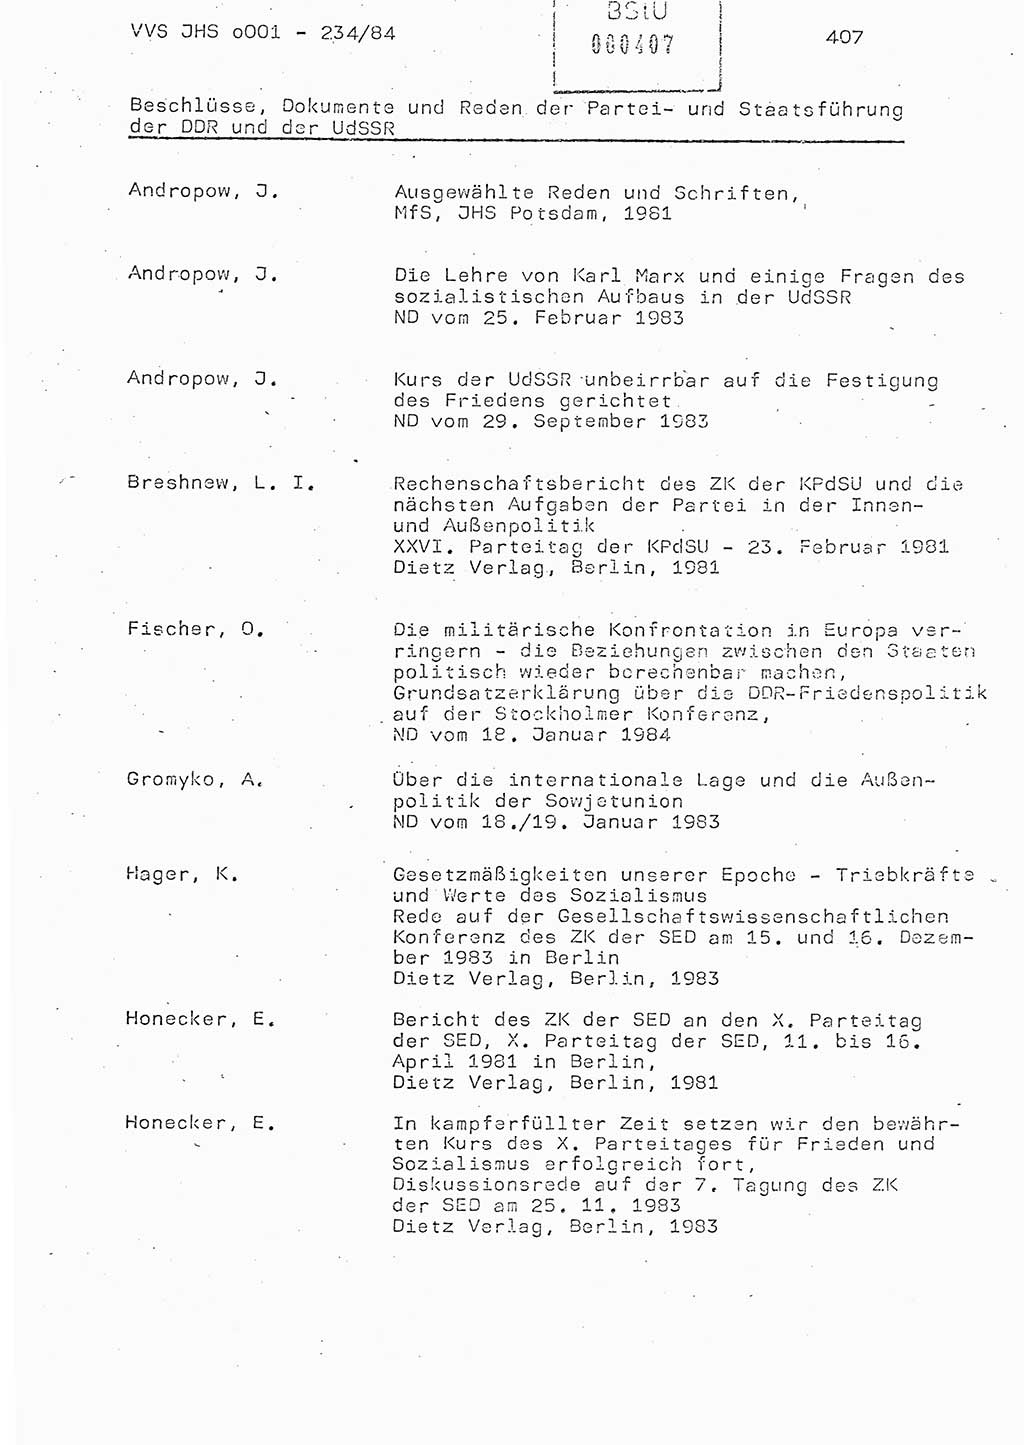 Dissertation Oberst Siegfried Rataizick (Abt. ⅩⅣ), Oberstleutnant Volkmar Heinz (Abt. ⅩⅣ), Oberstleutnant Werner Stein (HA Ⅸ), Hauptmann Heinz Conrad (JHS), Ministerium für Staatssicherheit (MfS) [Deutsche Demokratische Republik (DDR)], Juristische Hochschule (JHS), Vertrauliche Verschlußsache (VVS) o001-234/84, Potsdam 1984, Seite 407 (Diss. MfS DDR JHS VVS o001-234/84 1984, S. 407)